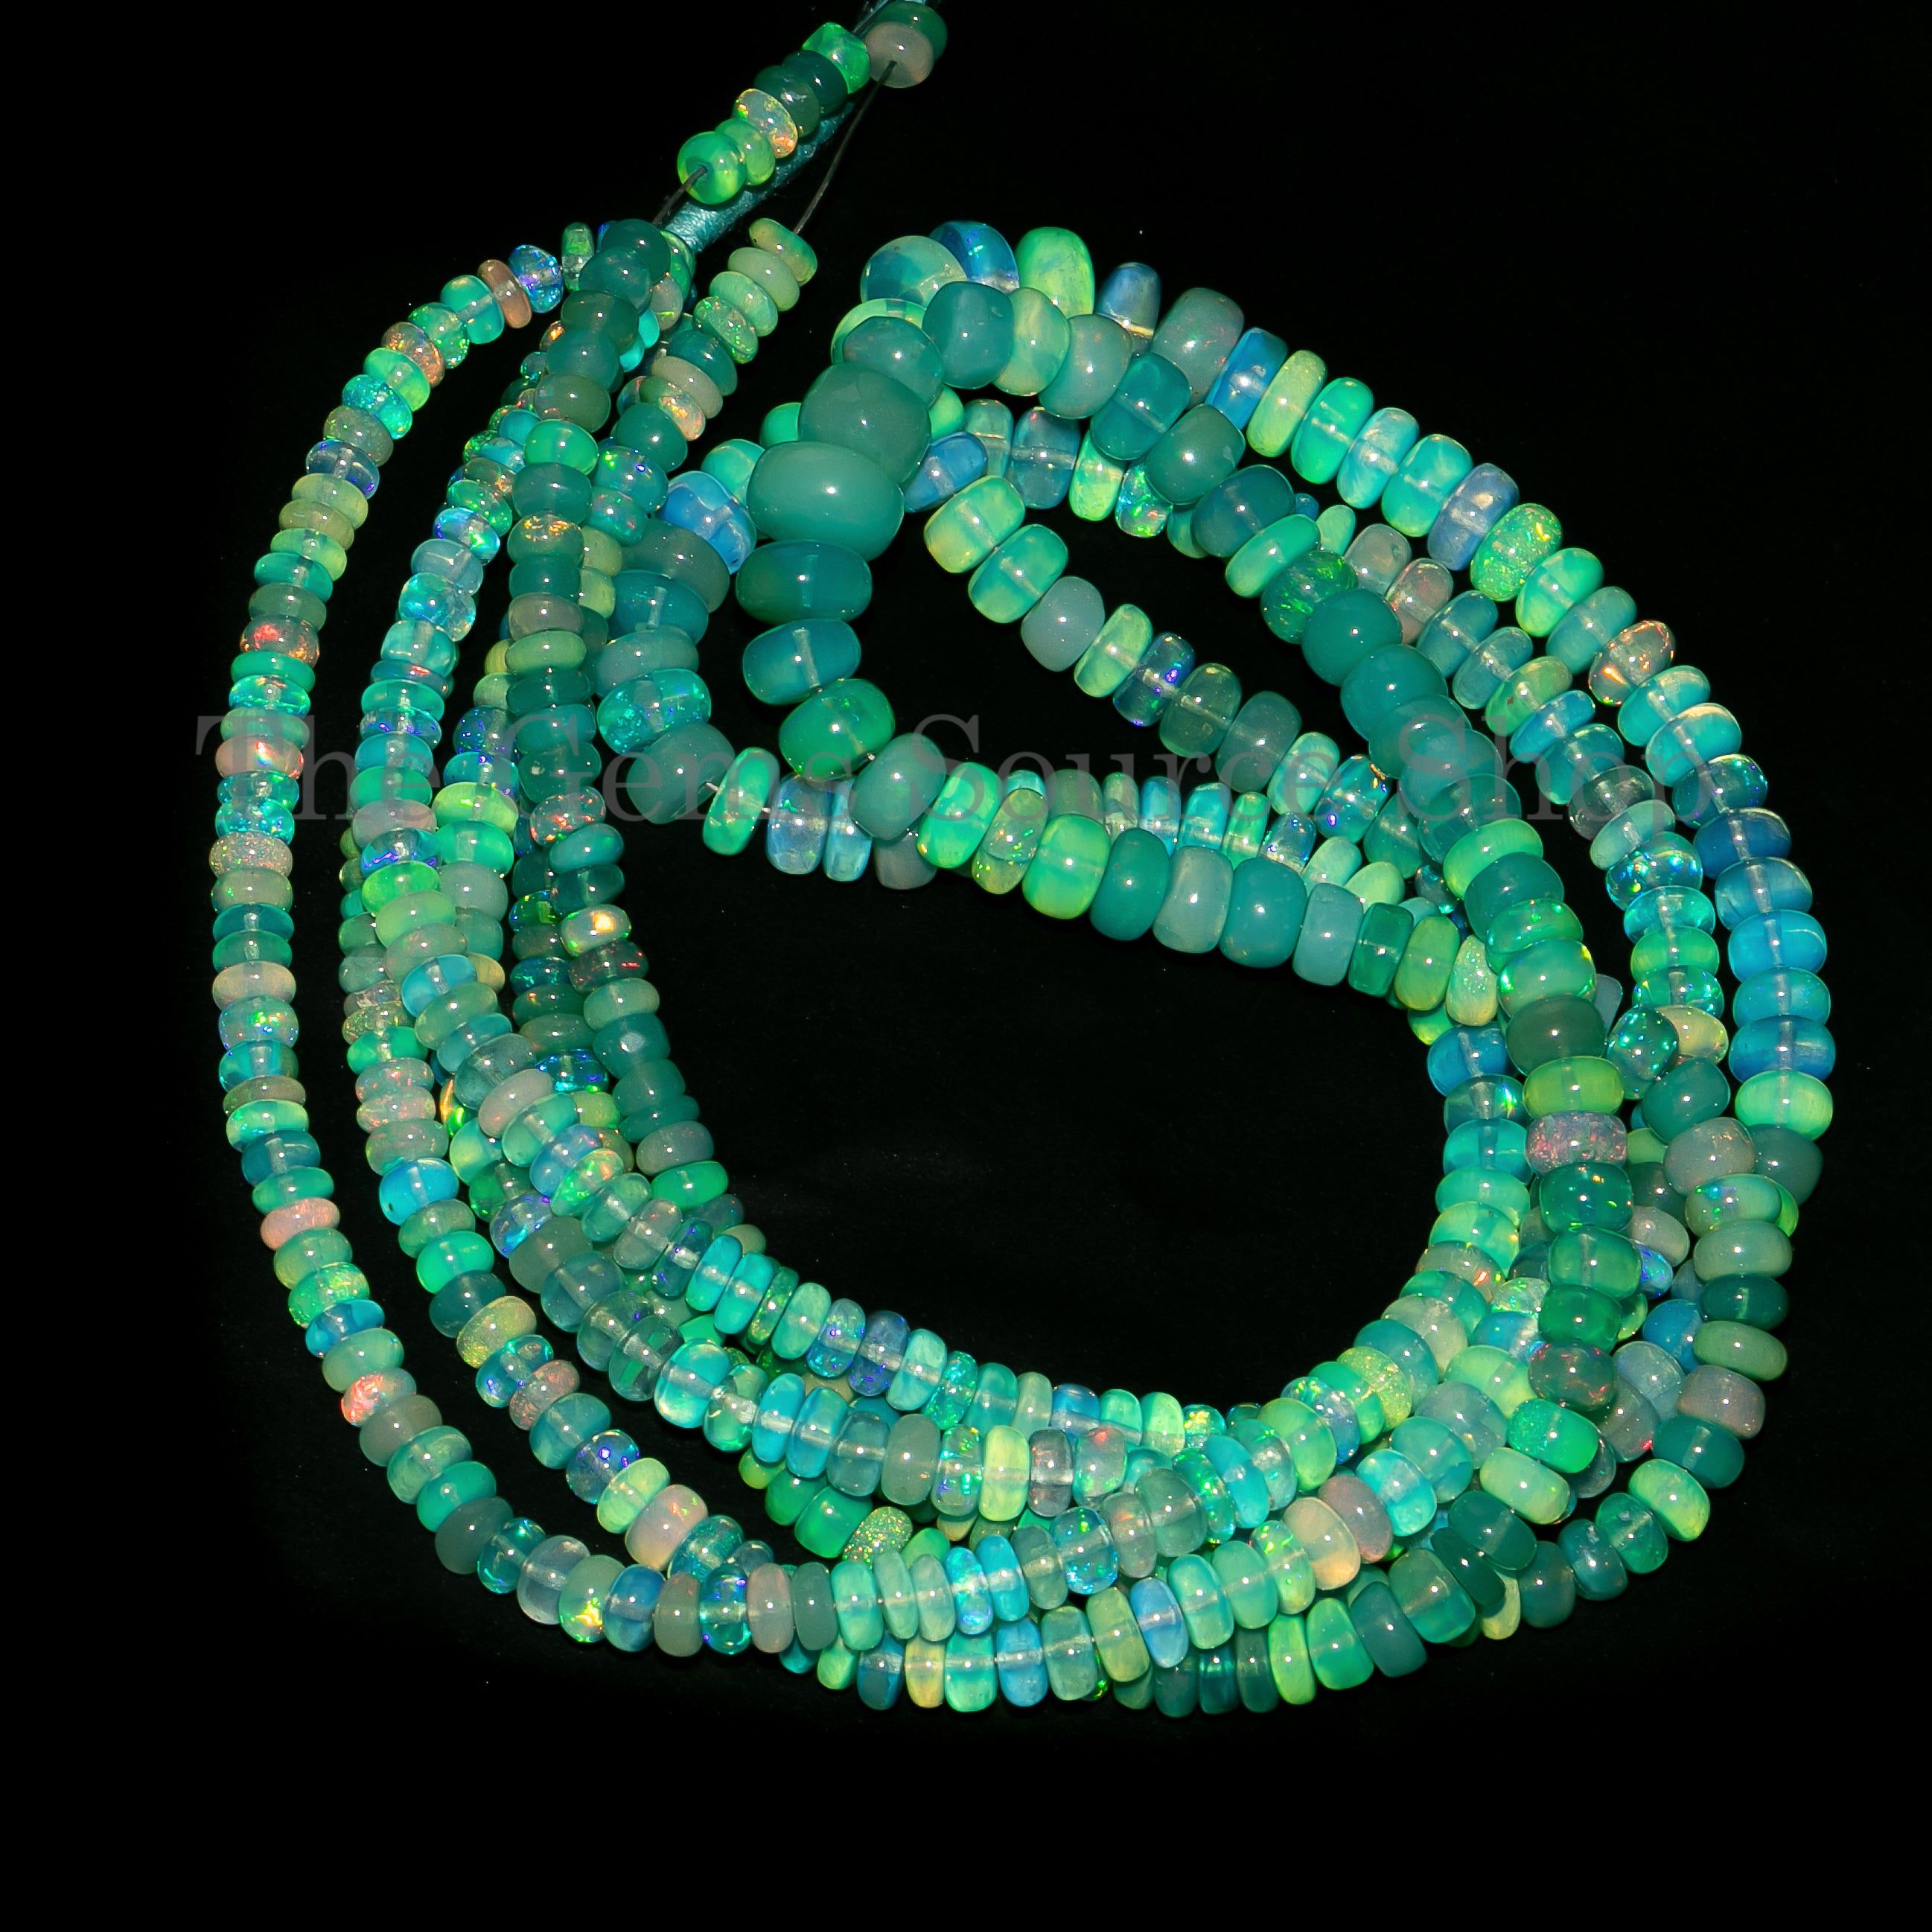 4-6mm Light Green Opal Plain Rondelle Gemstone Beads TGS-5025